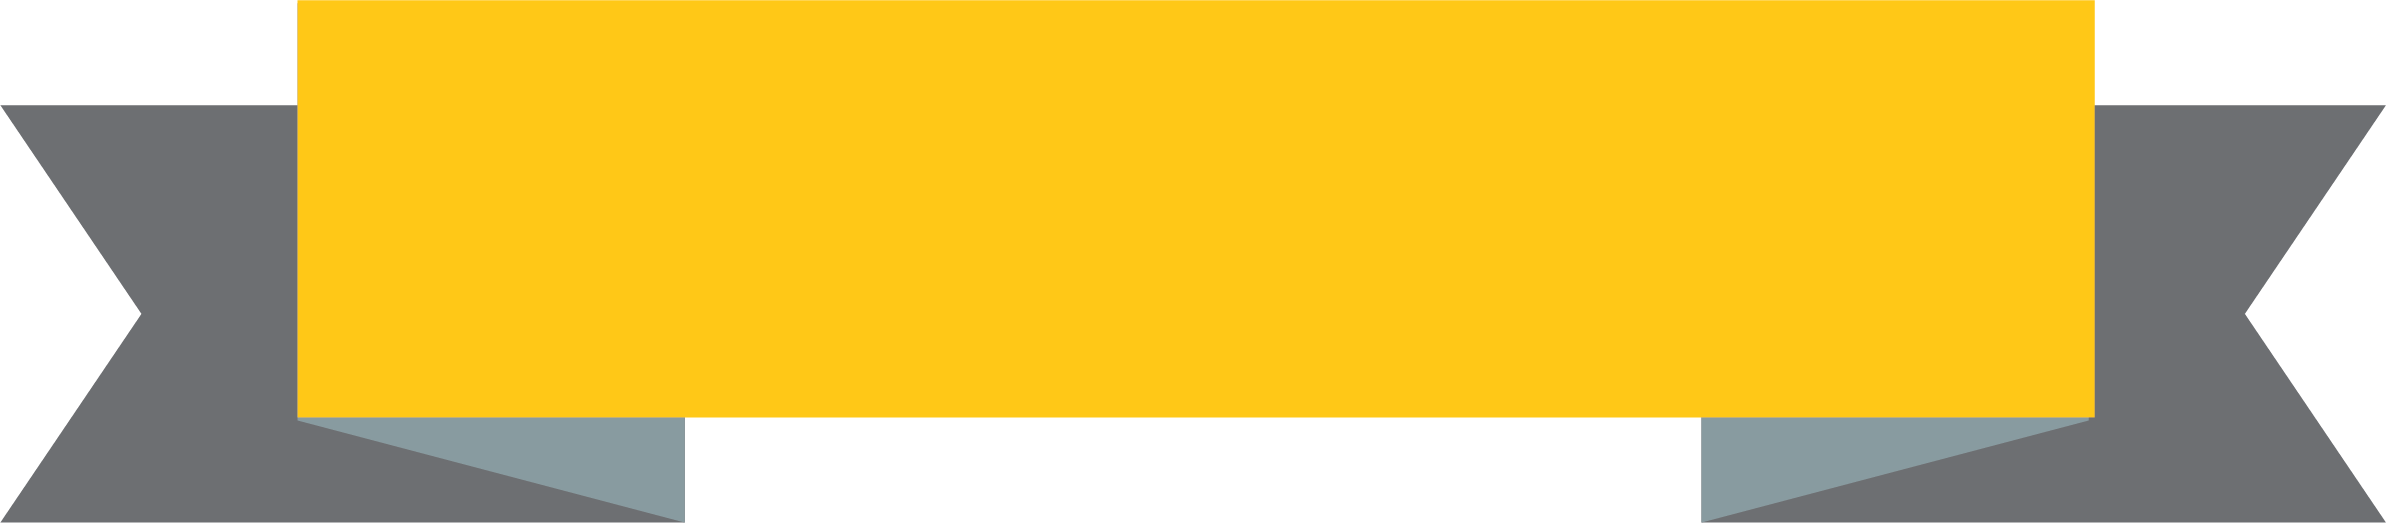 Immagine di PNG nastro giallo con sfondo Trasparente